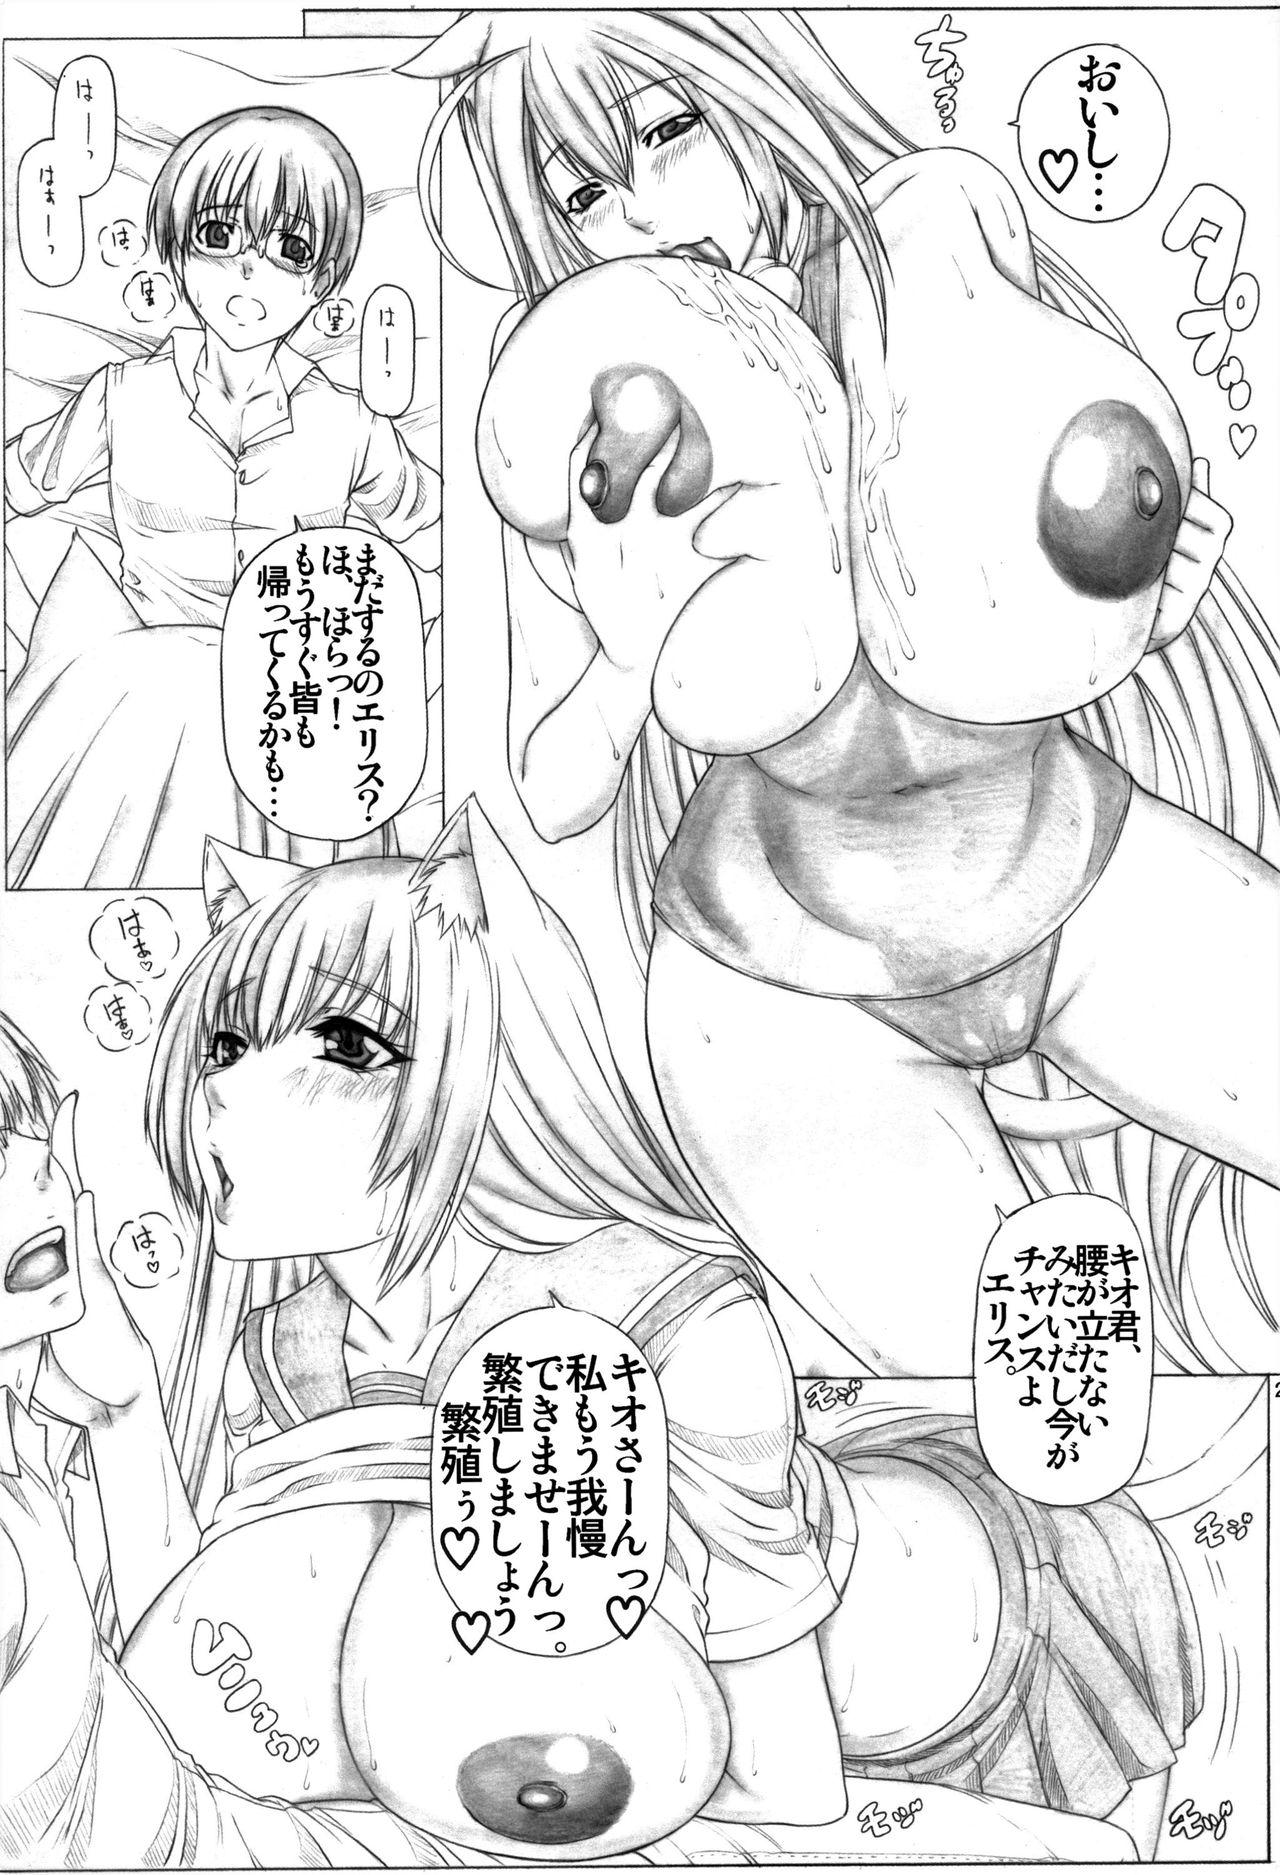 Angel's stroke 48 Nekomimi Shibori 24